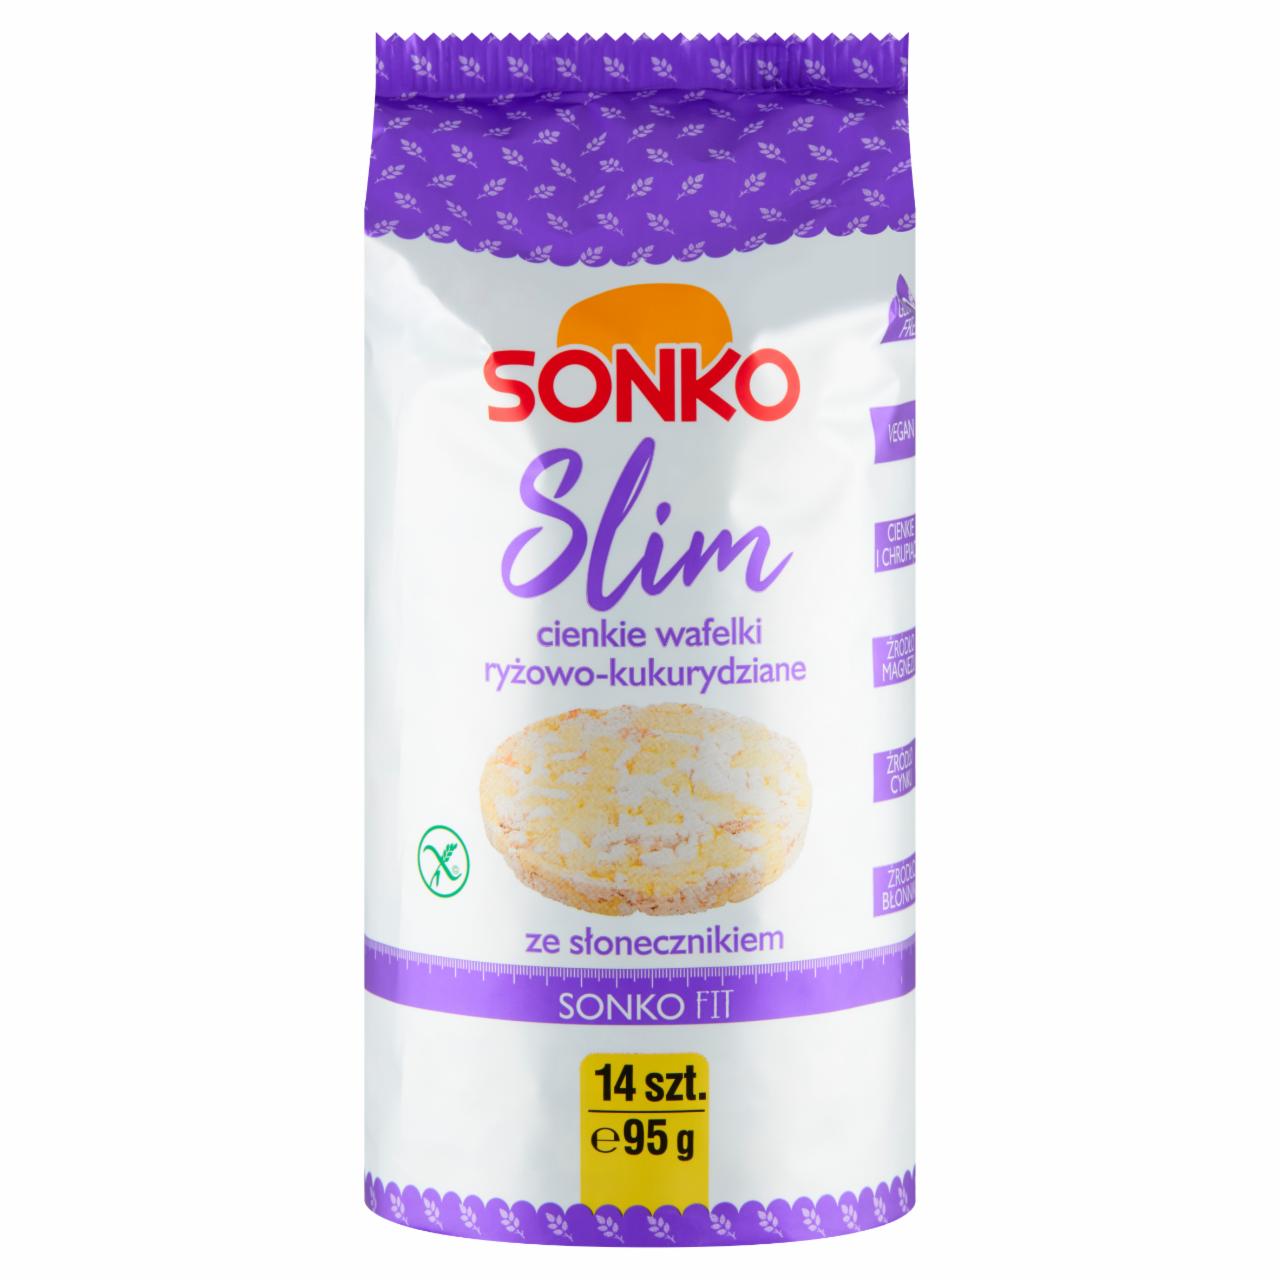 Zdjęcia - Sonko Slim Cienkie wafelki ryżowo-kukurydziane ze słonecznikiem 95 g (14 sztuk)